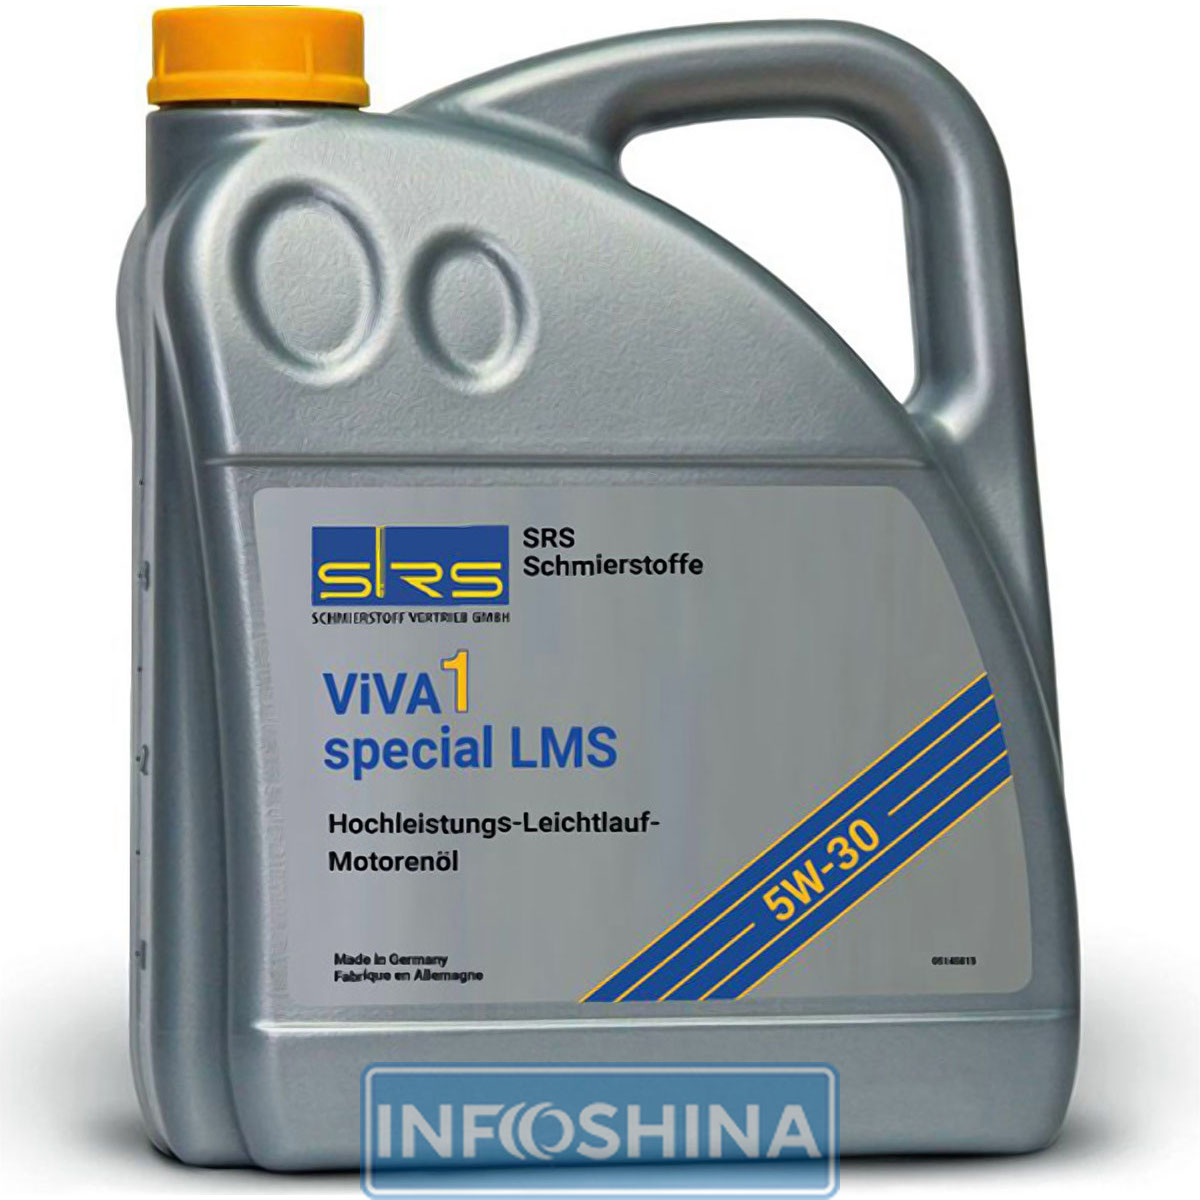 Купить масло SRS ViVA 1 special LMS 5W-30 (4л)